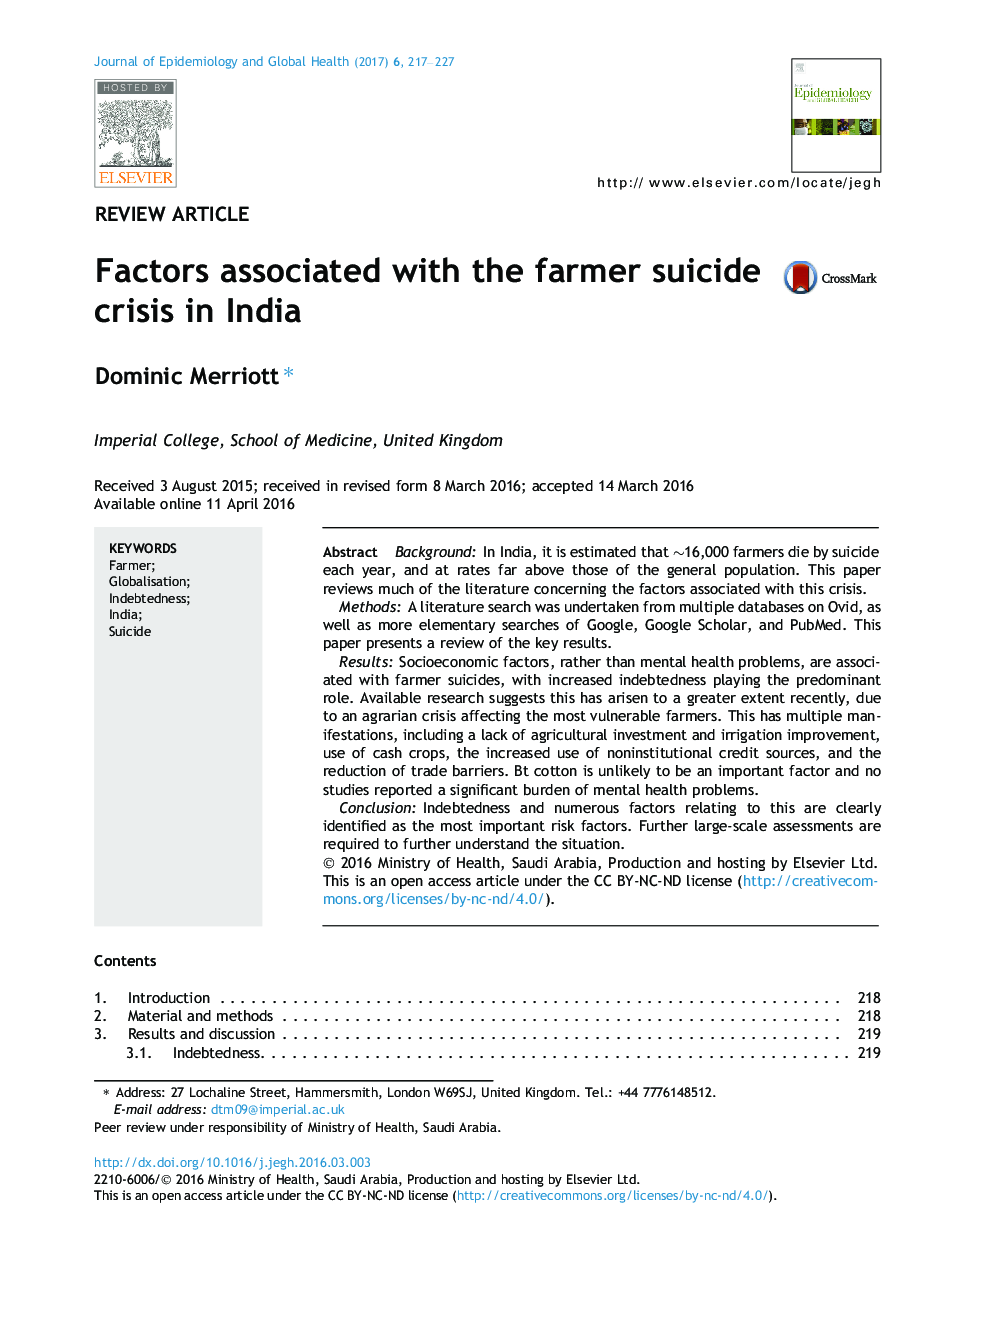 عوامل مرتبط با بحران خودکشی کشاورزان در هند 